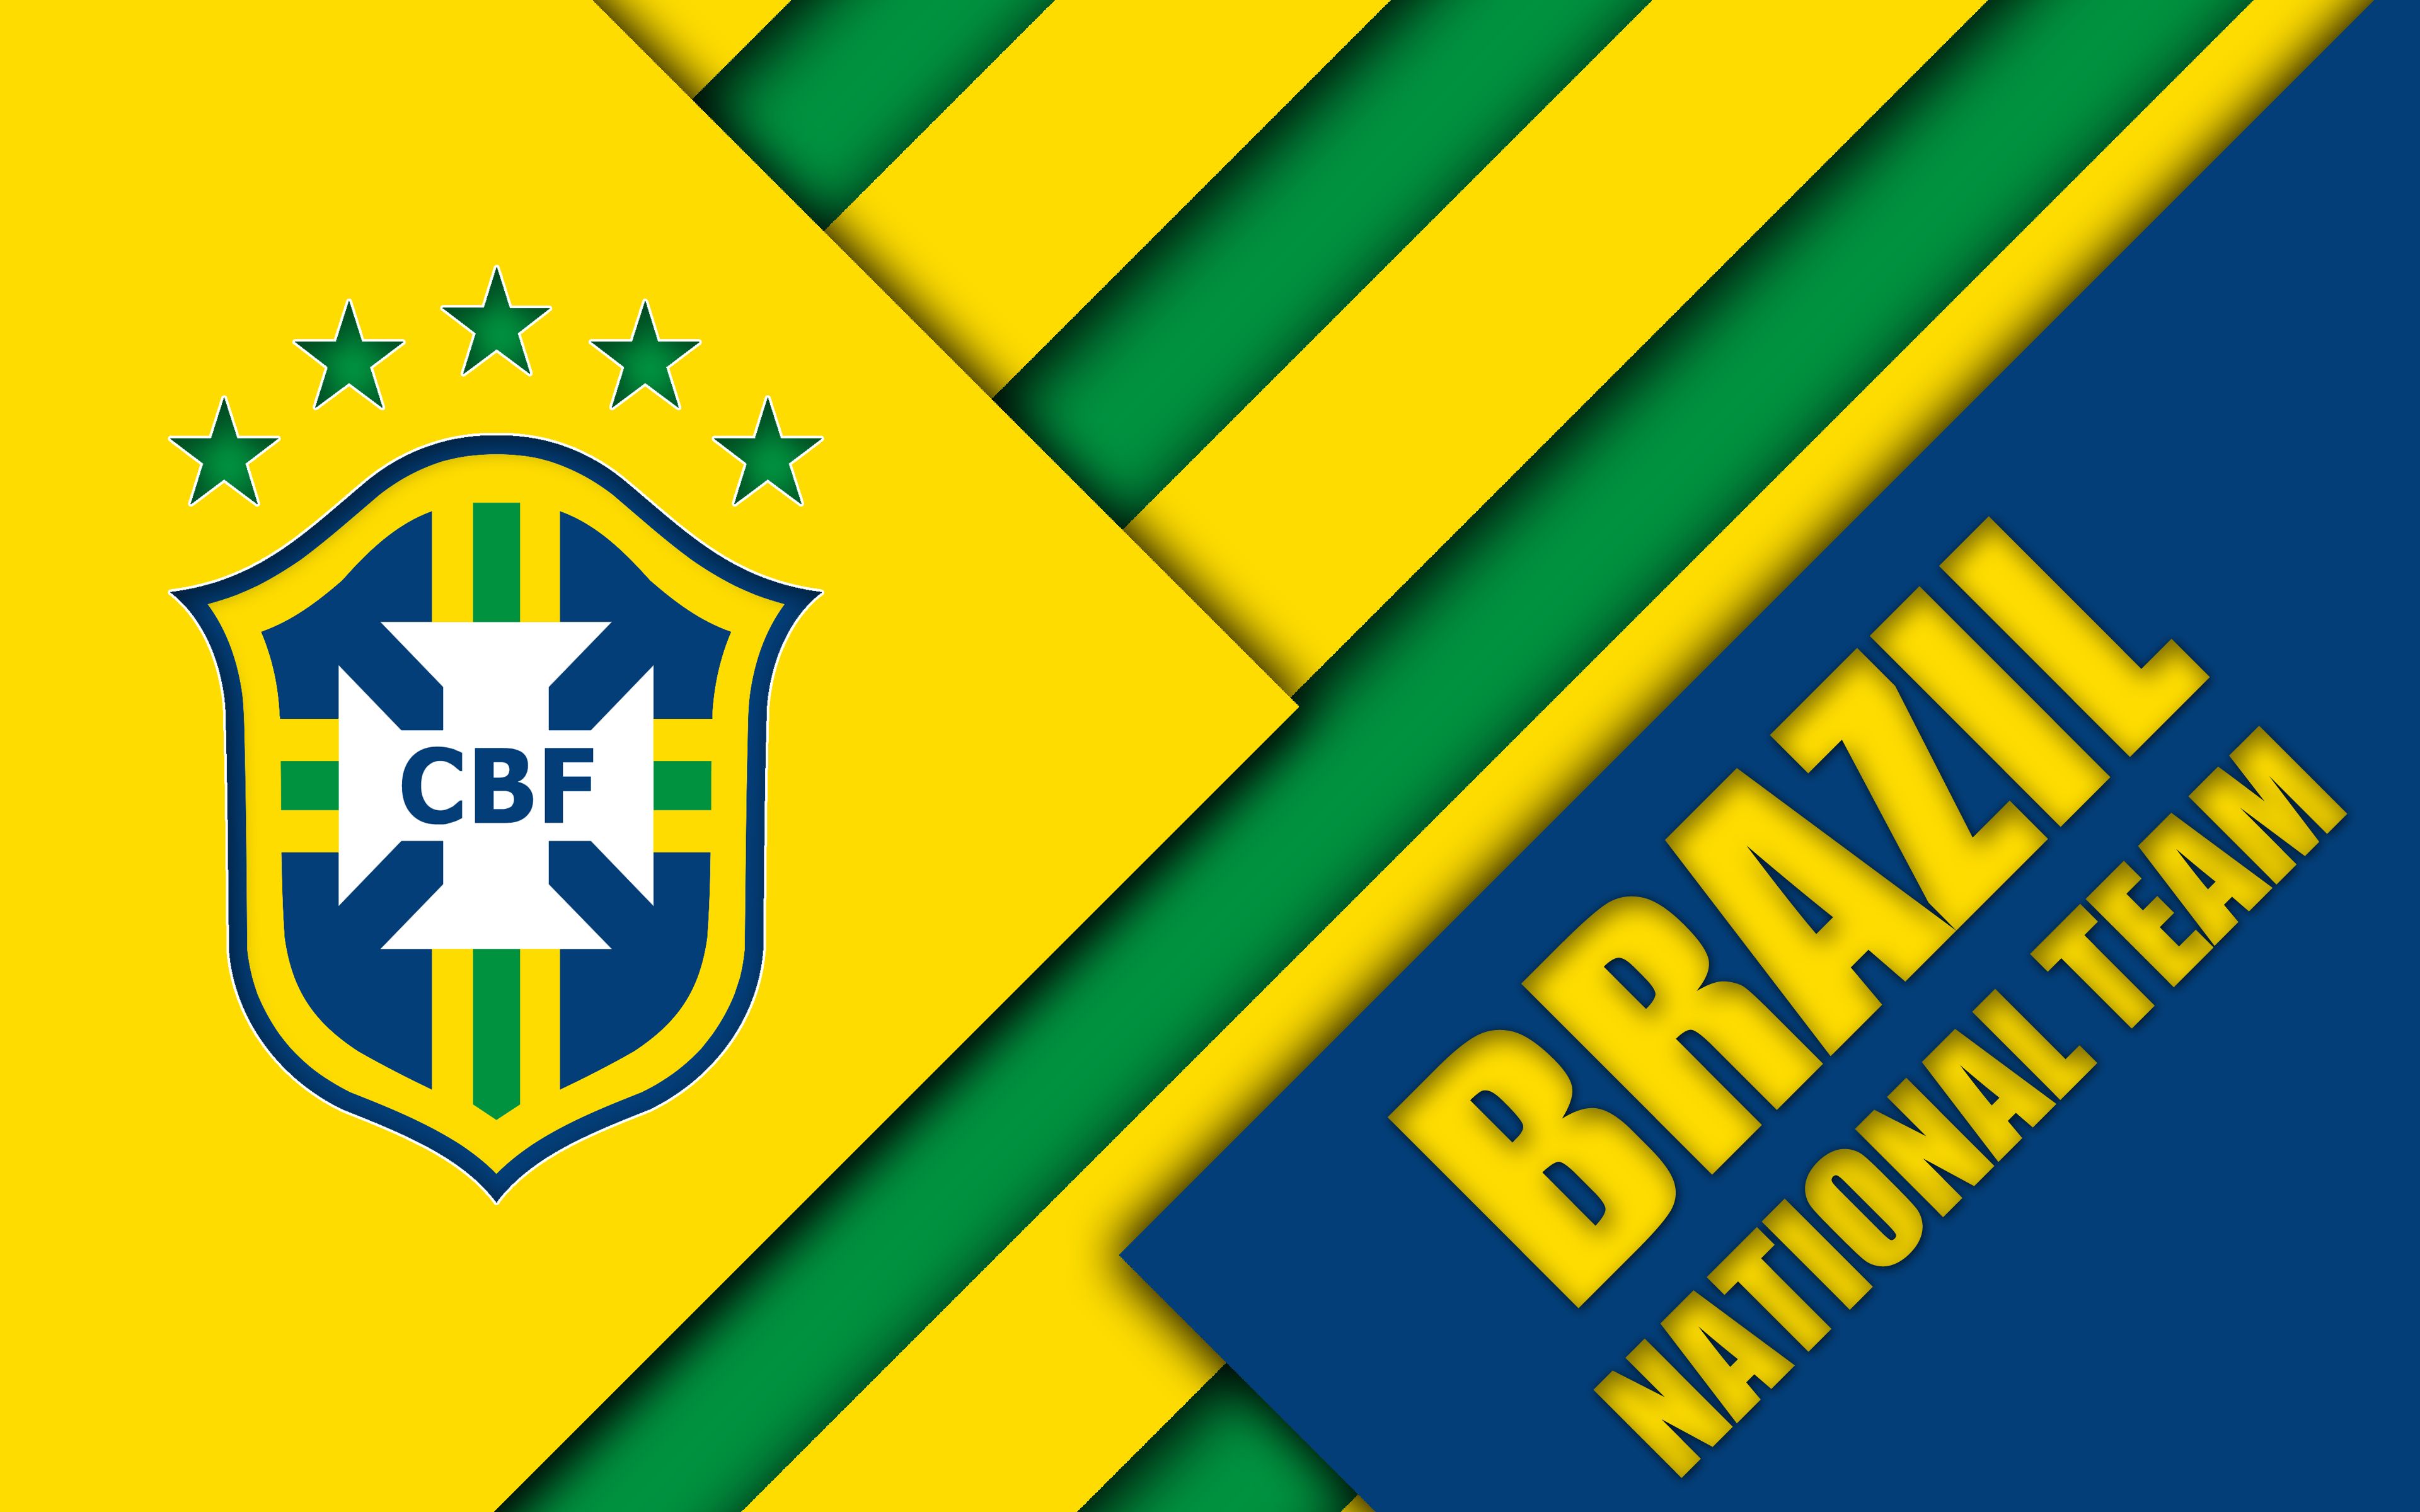 Brazil Soccer Wallpaper